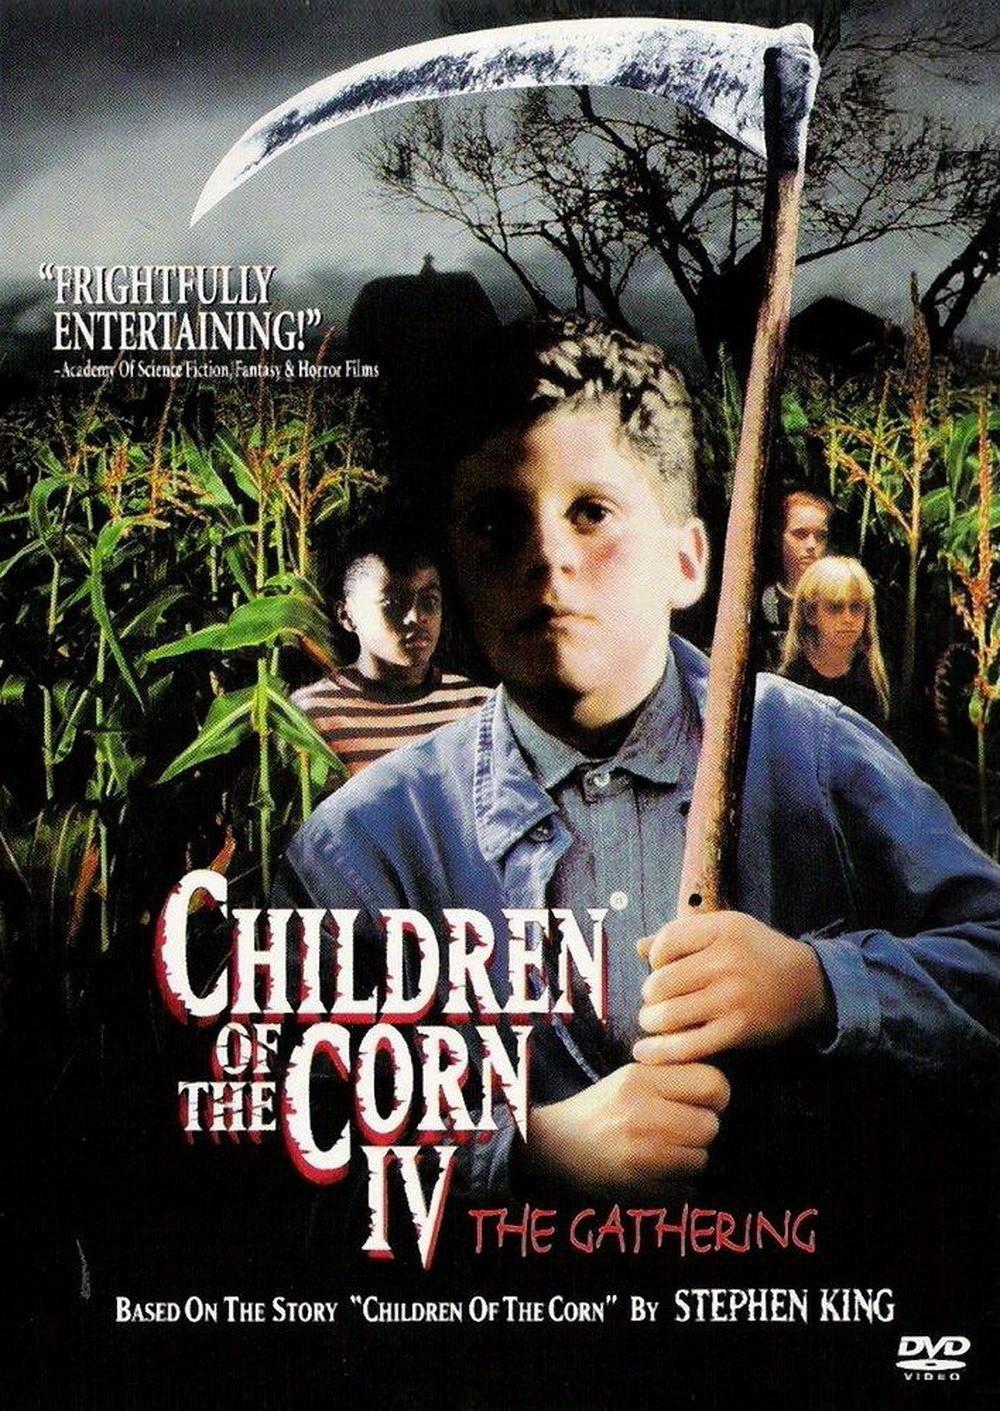 A kukorica gyermekei 4. Az aratás (Children of the Corn IV: The Gathering) 1996.